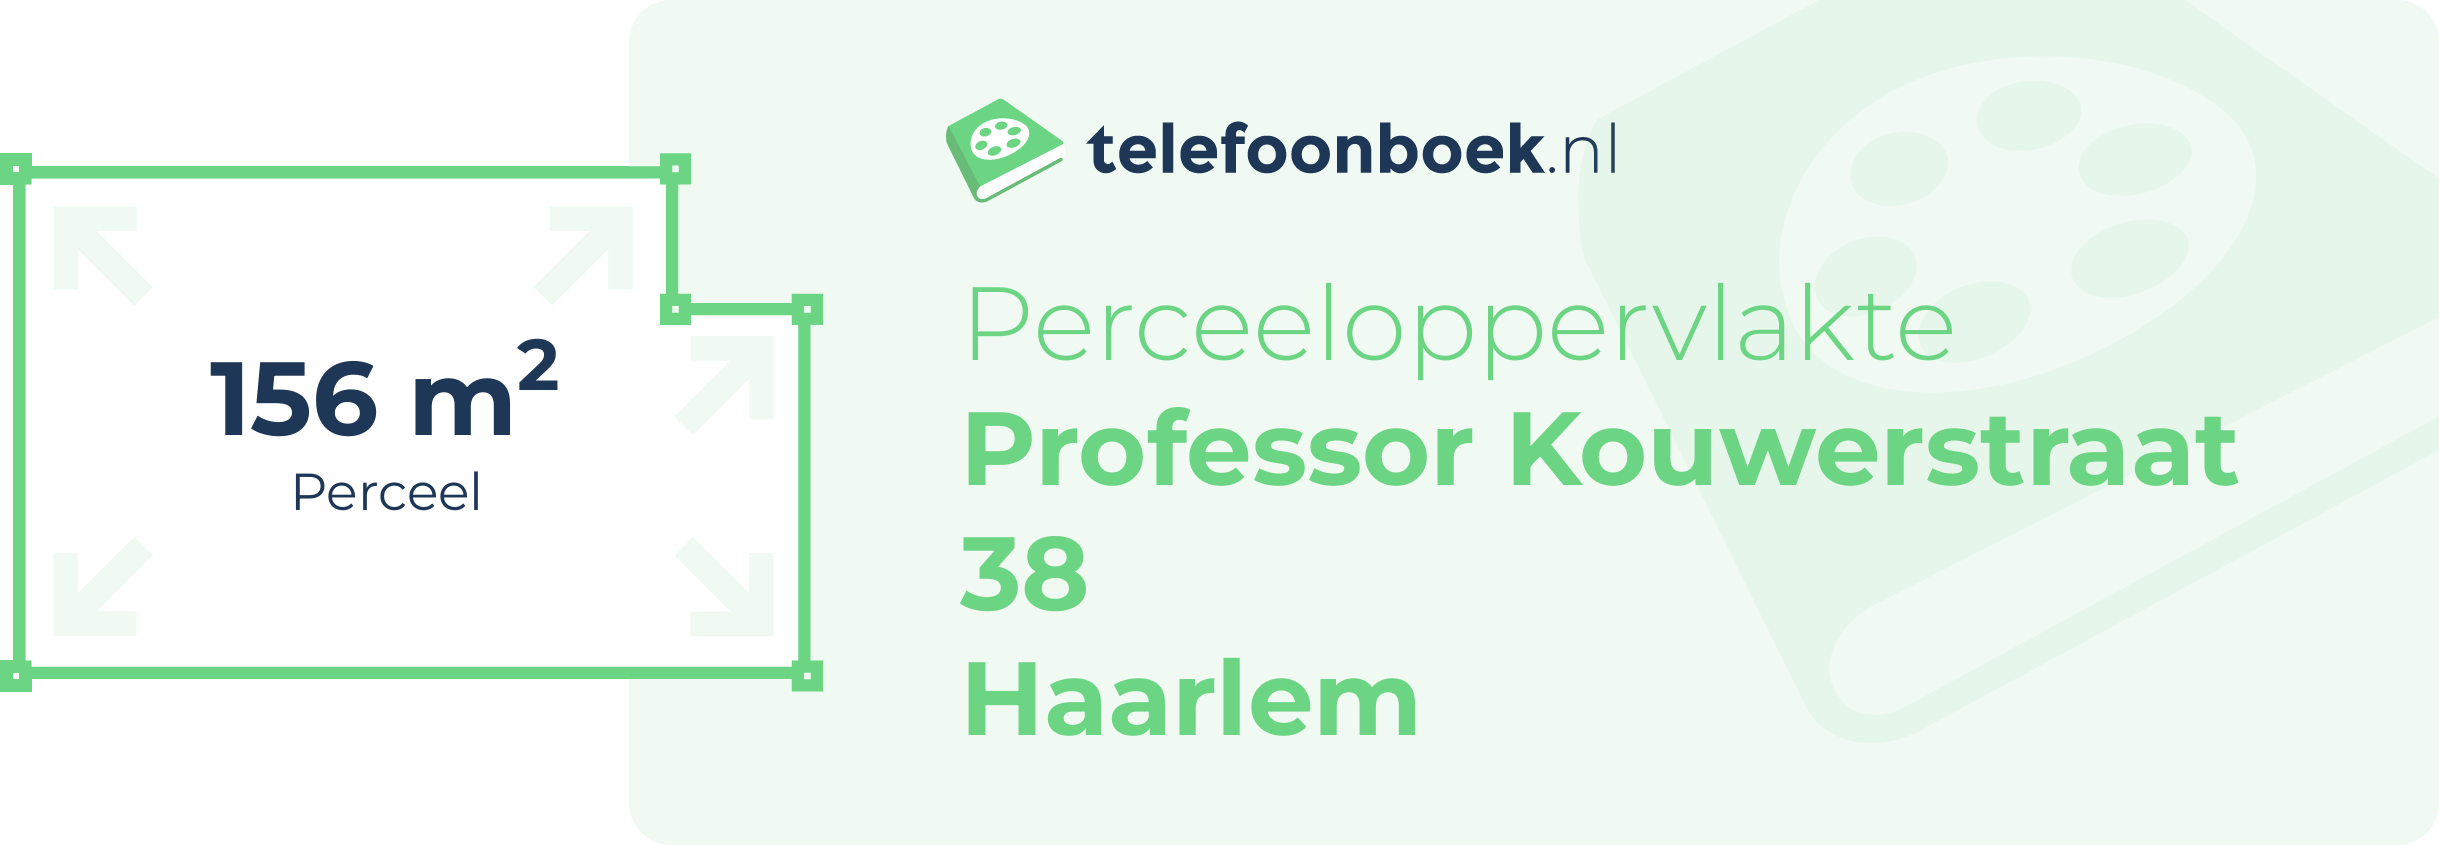 Perceeloppervlakte Professor Kouwerstraat 38 Haarlem